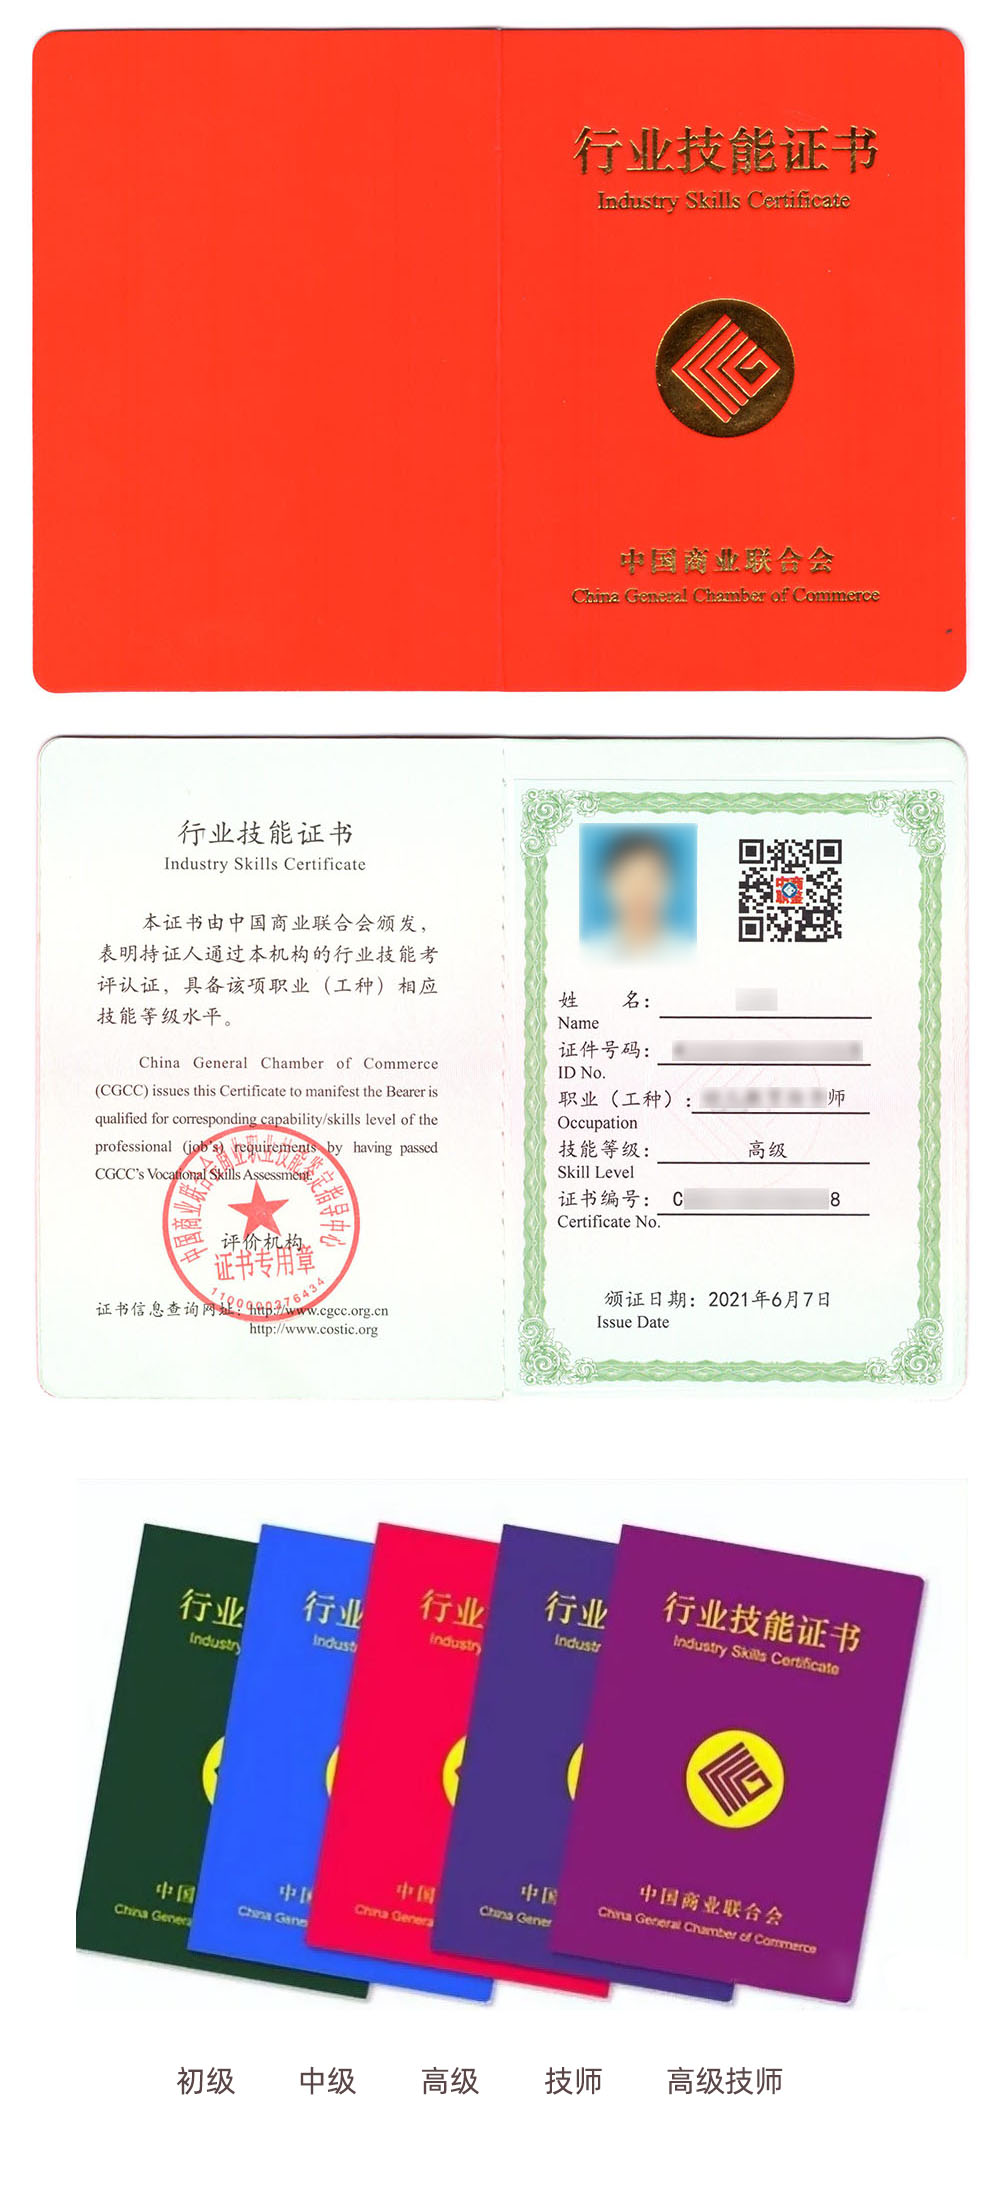 中国商业联合会商业职业技能鉴定指导中心 行业技能证书 潜能开发分析师证证书样本